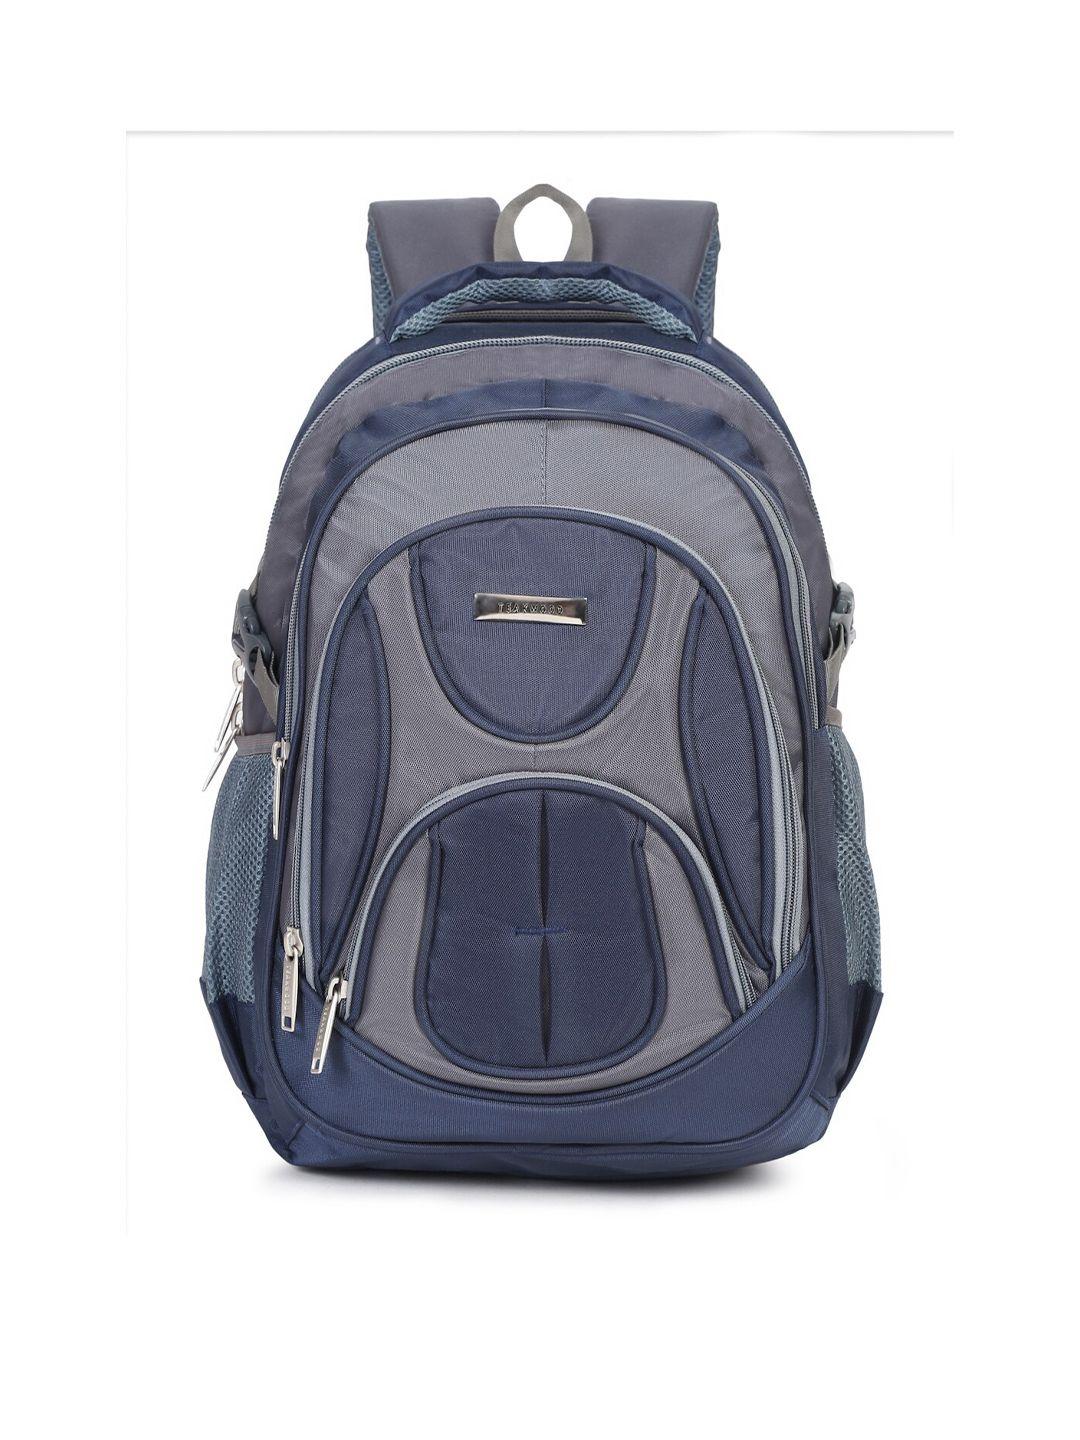 teakwood leathers water resistant laptop backpack